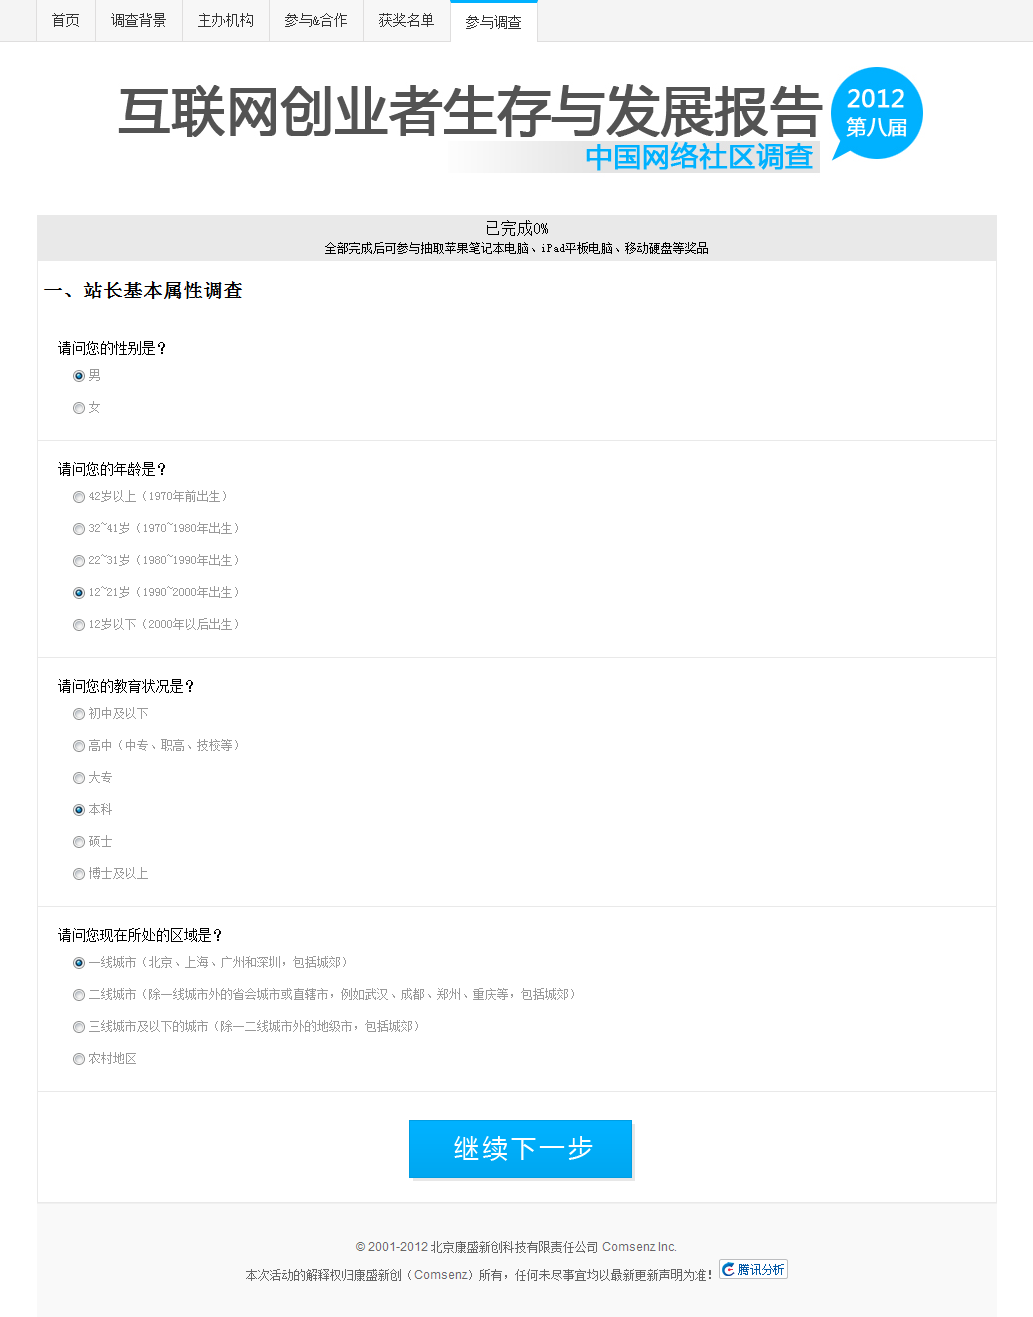 2012年第八届中国网络社区调查一、站长基本属性调查.png